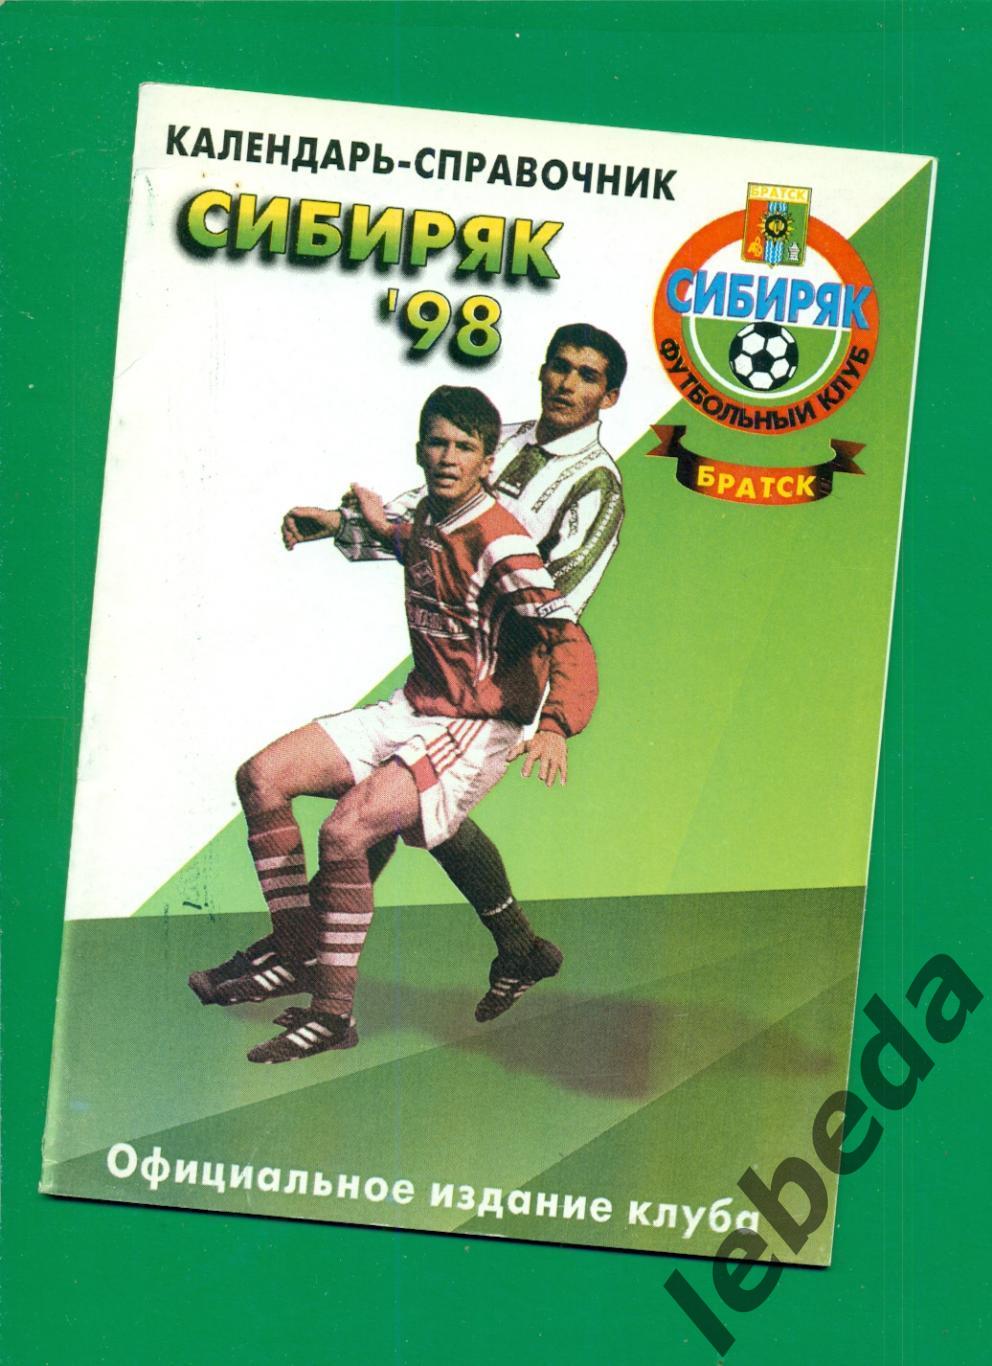 Сибиряк Братск - 1998 год. Официальное издание клуба.